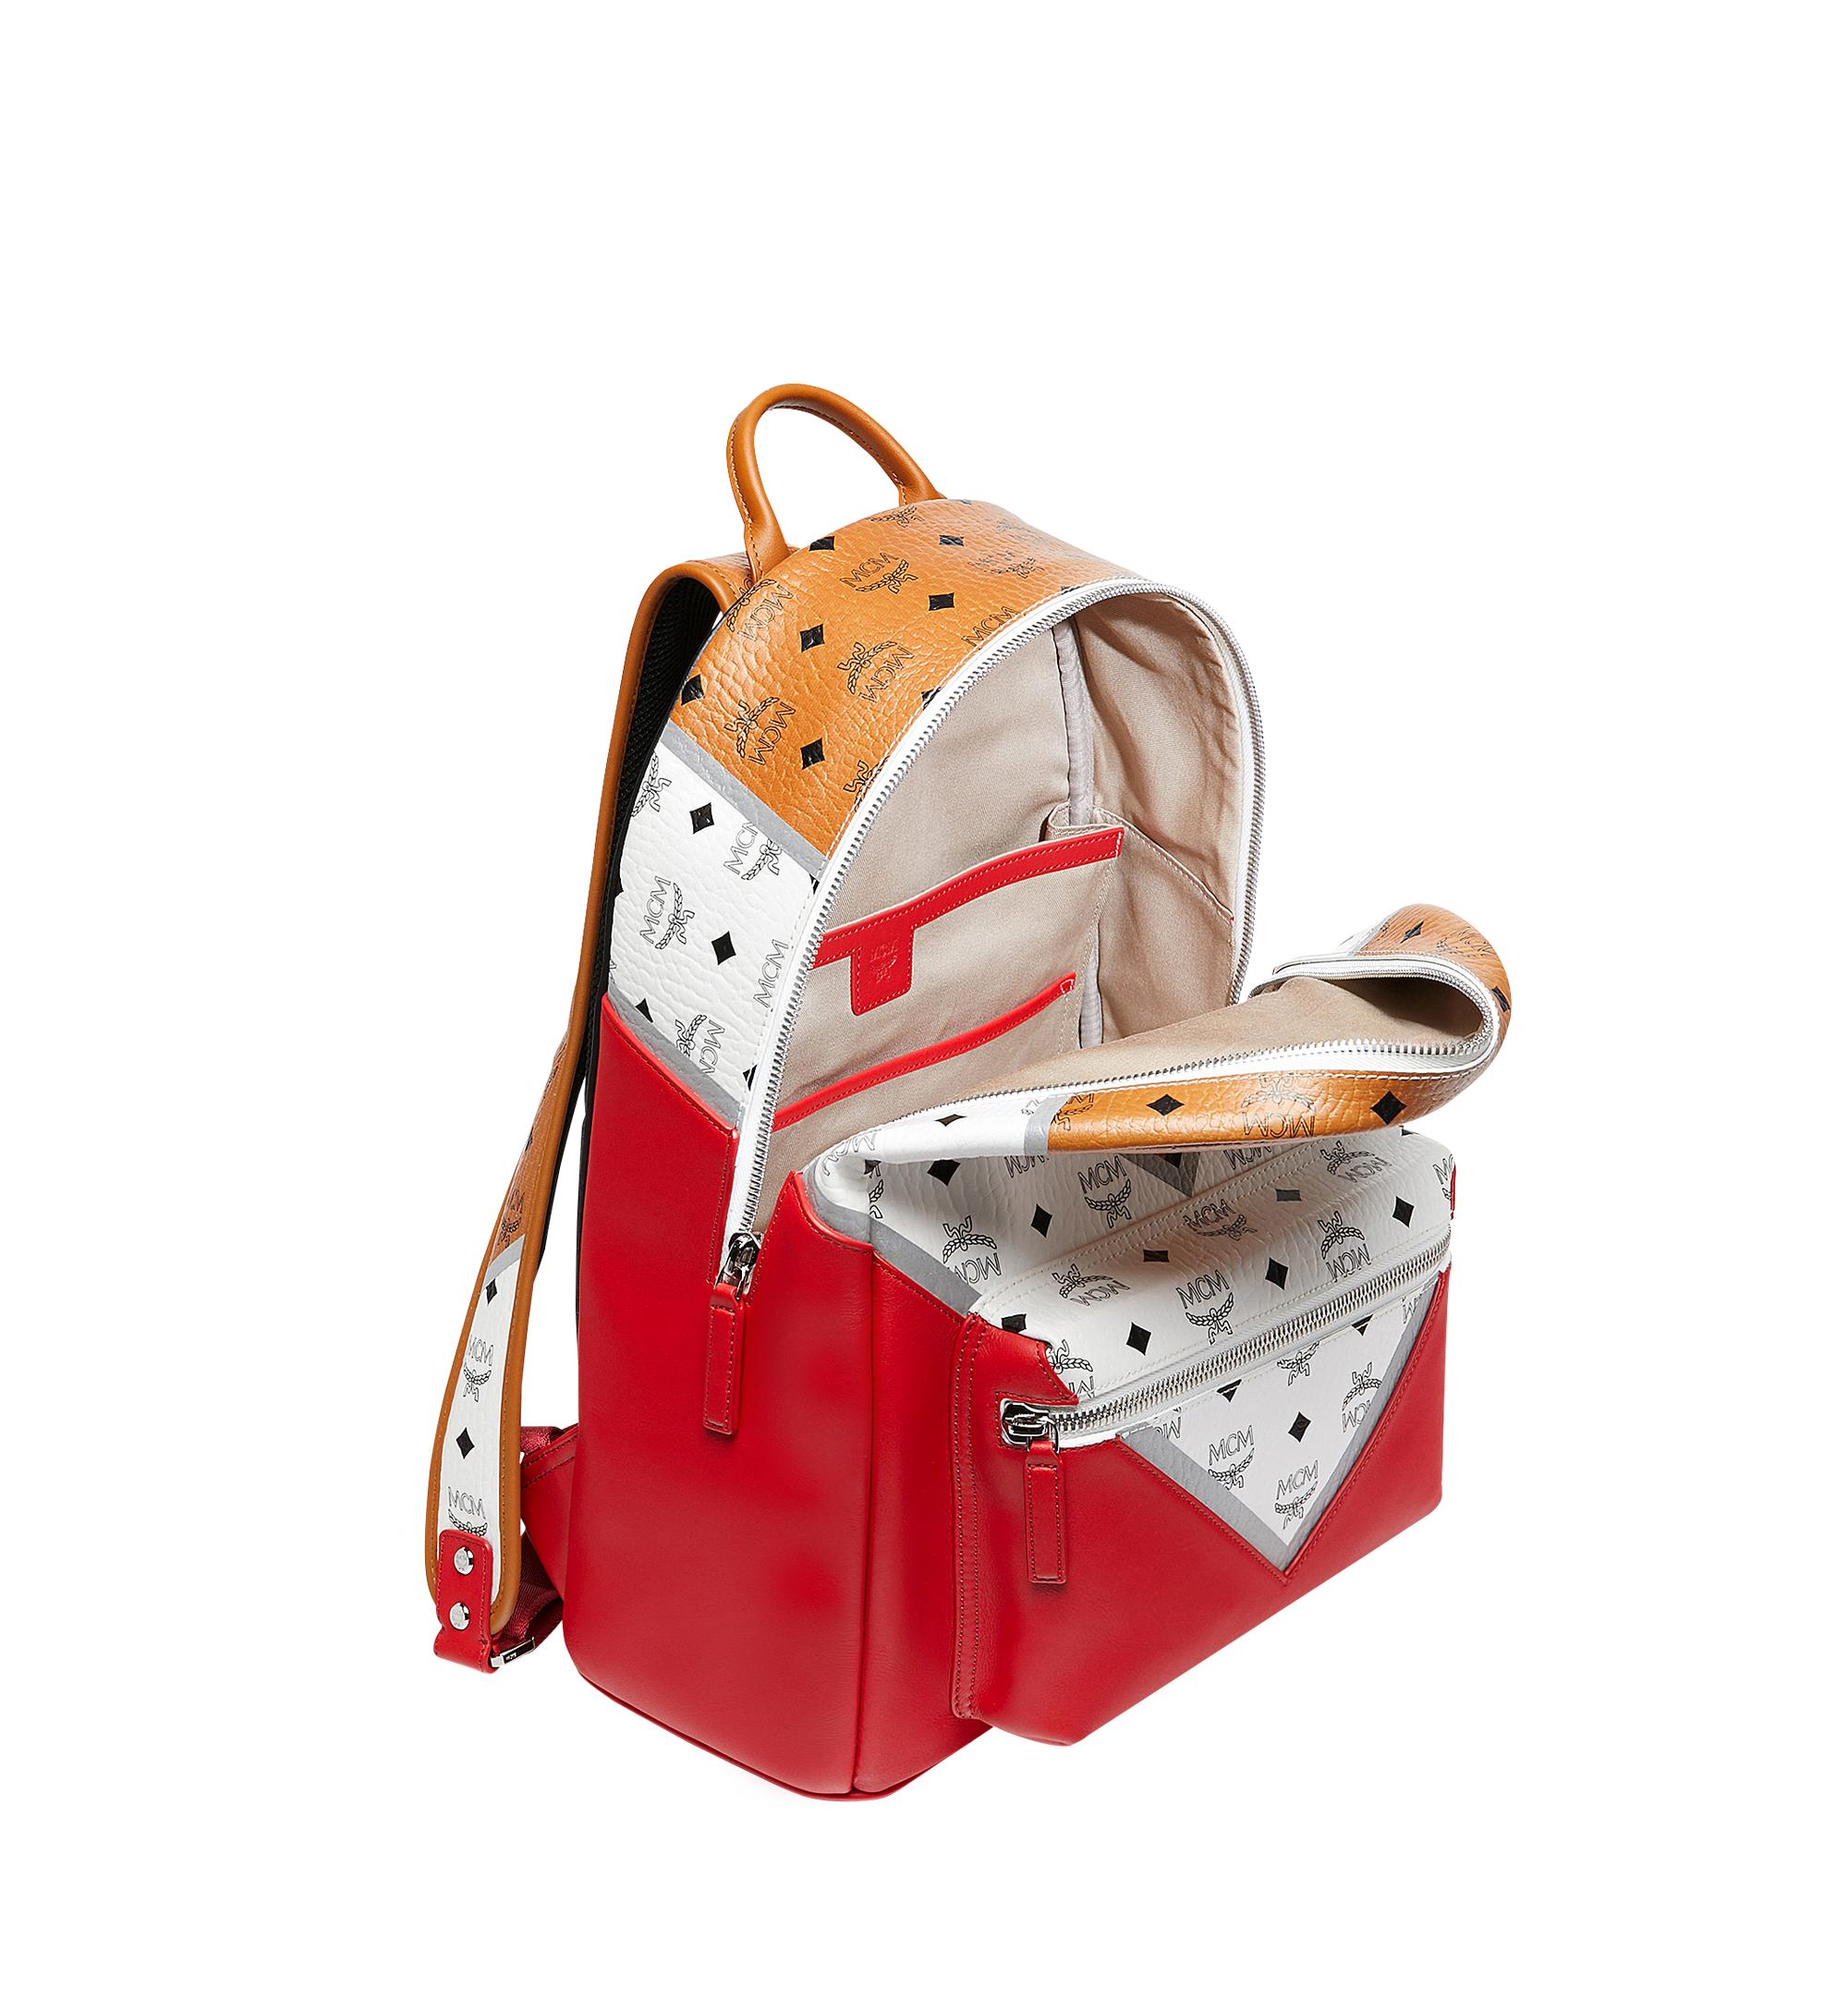 Mcm Outlet: backpack for man - Copper Red  Mcm backpack MMKCSVE02 online  at